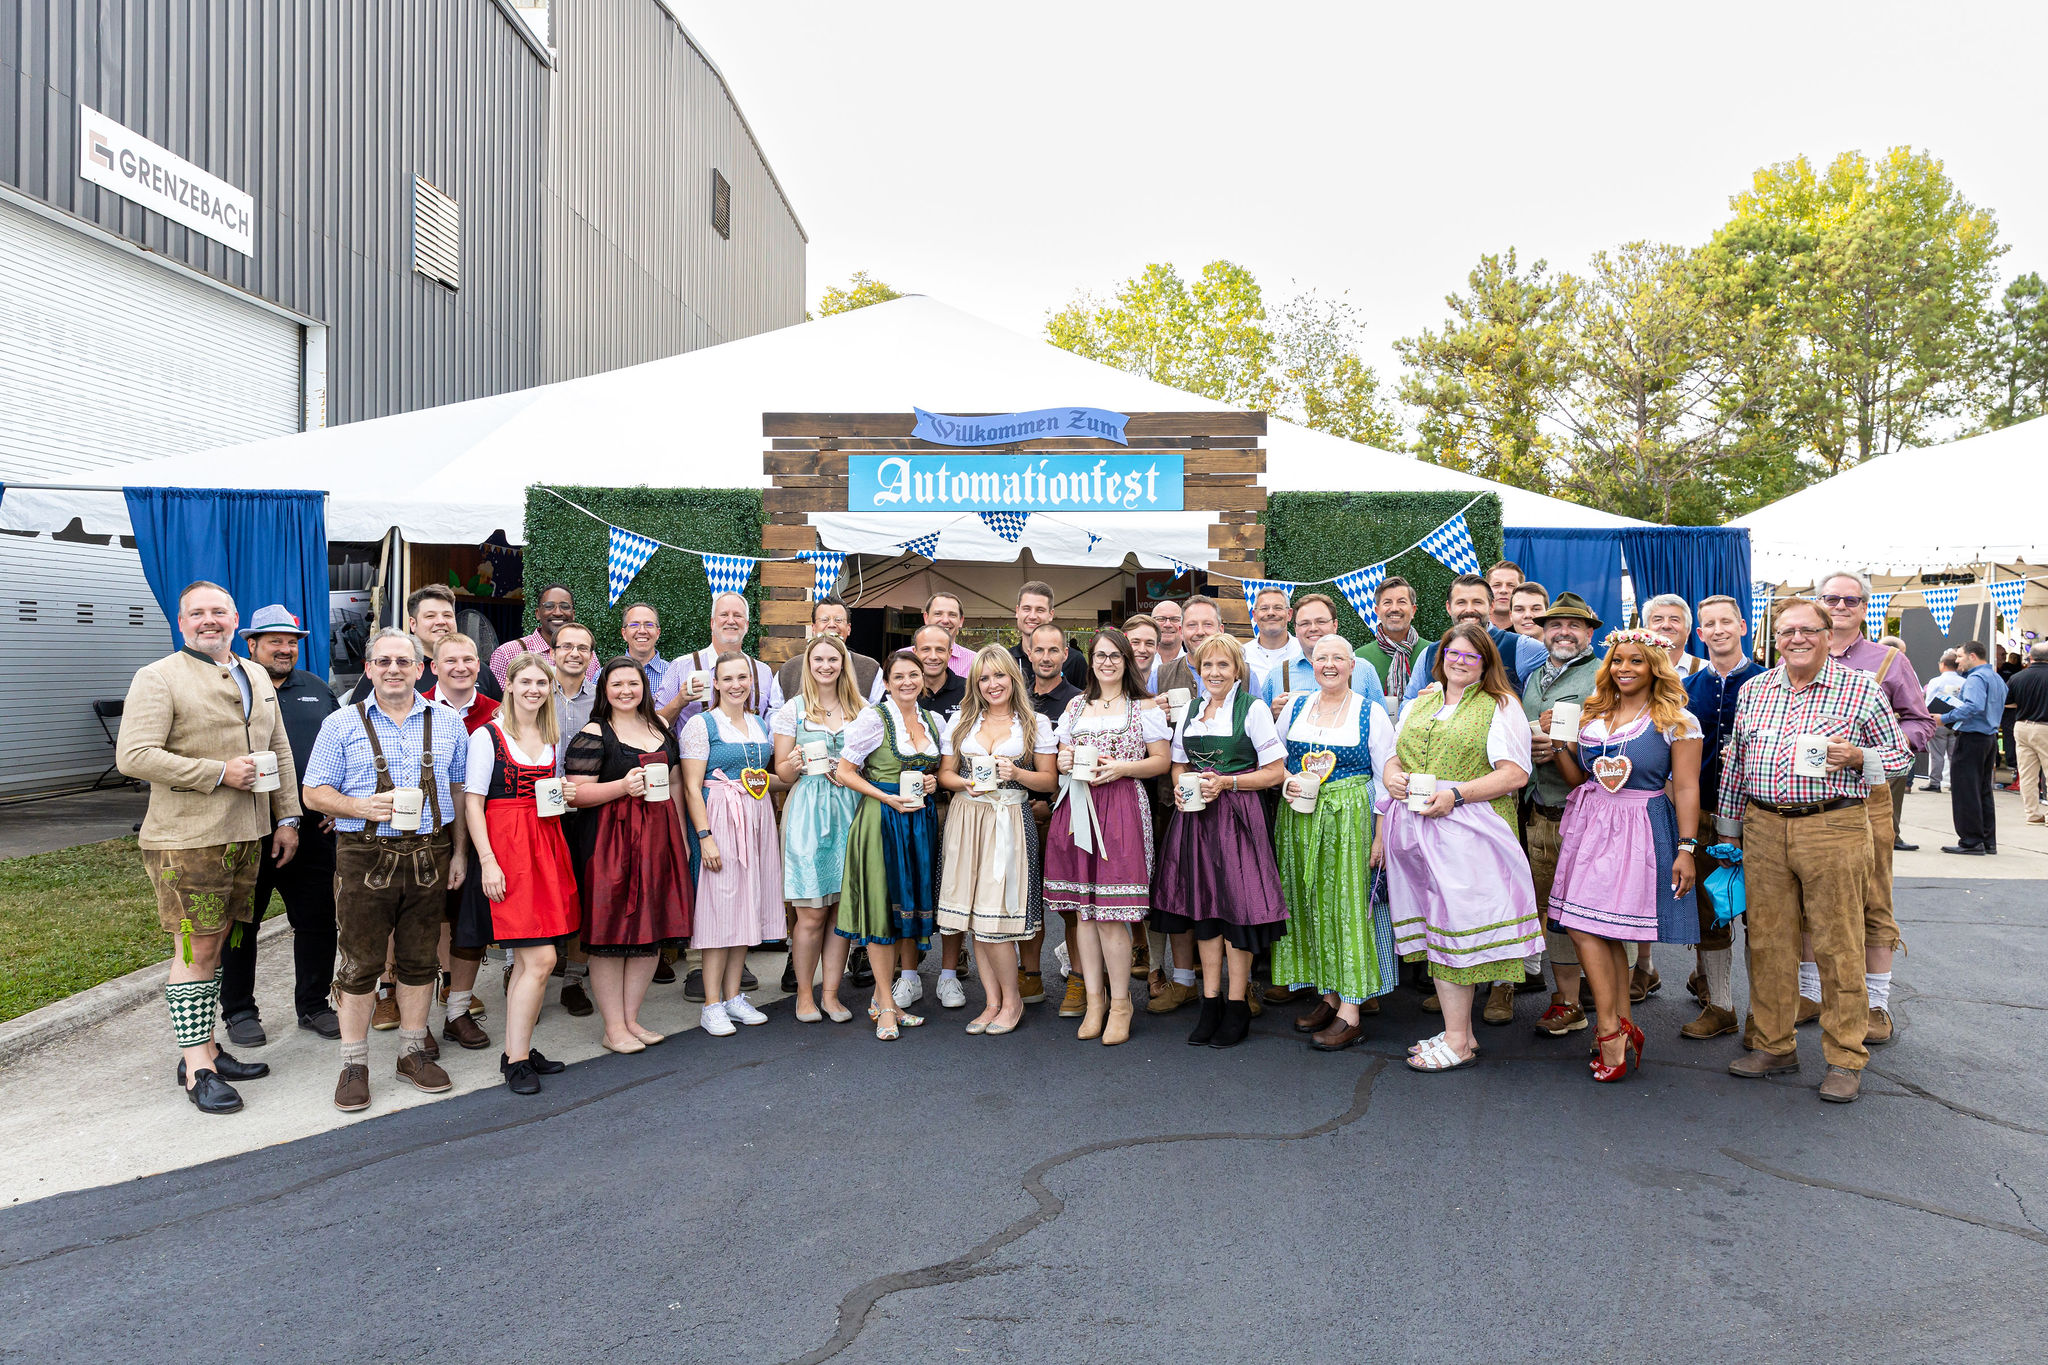 People celebrated Grenzebach's Automationfest